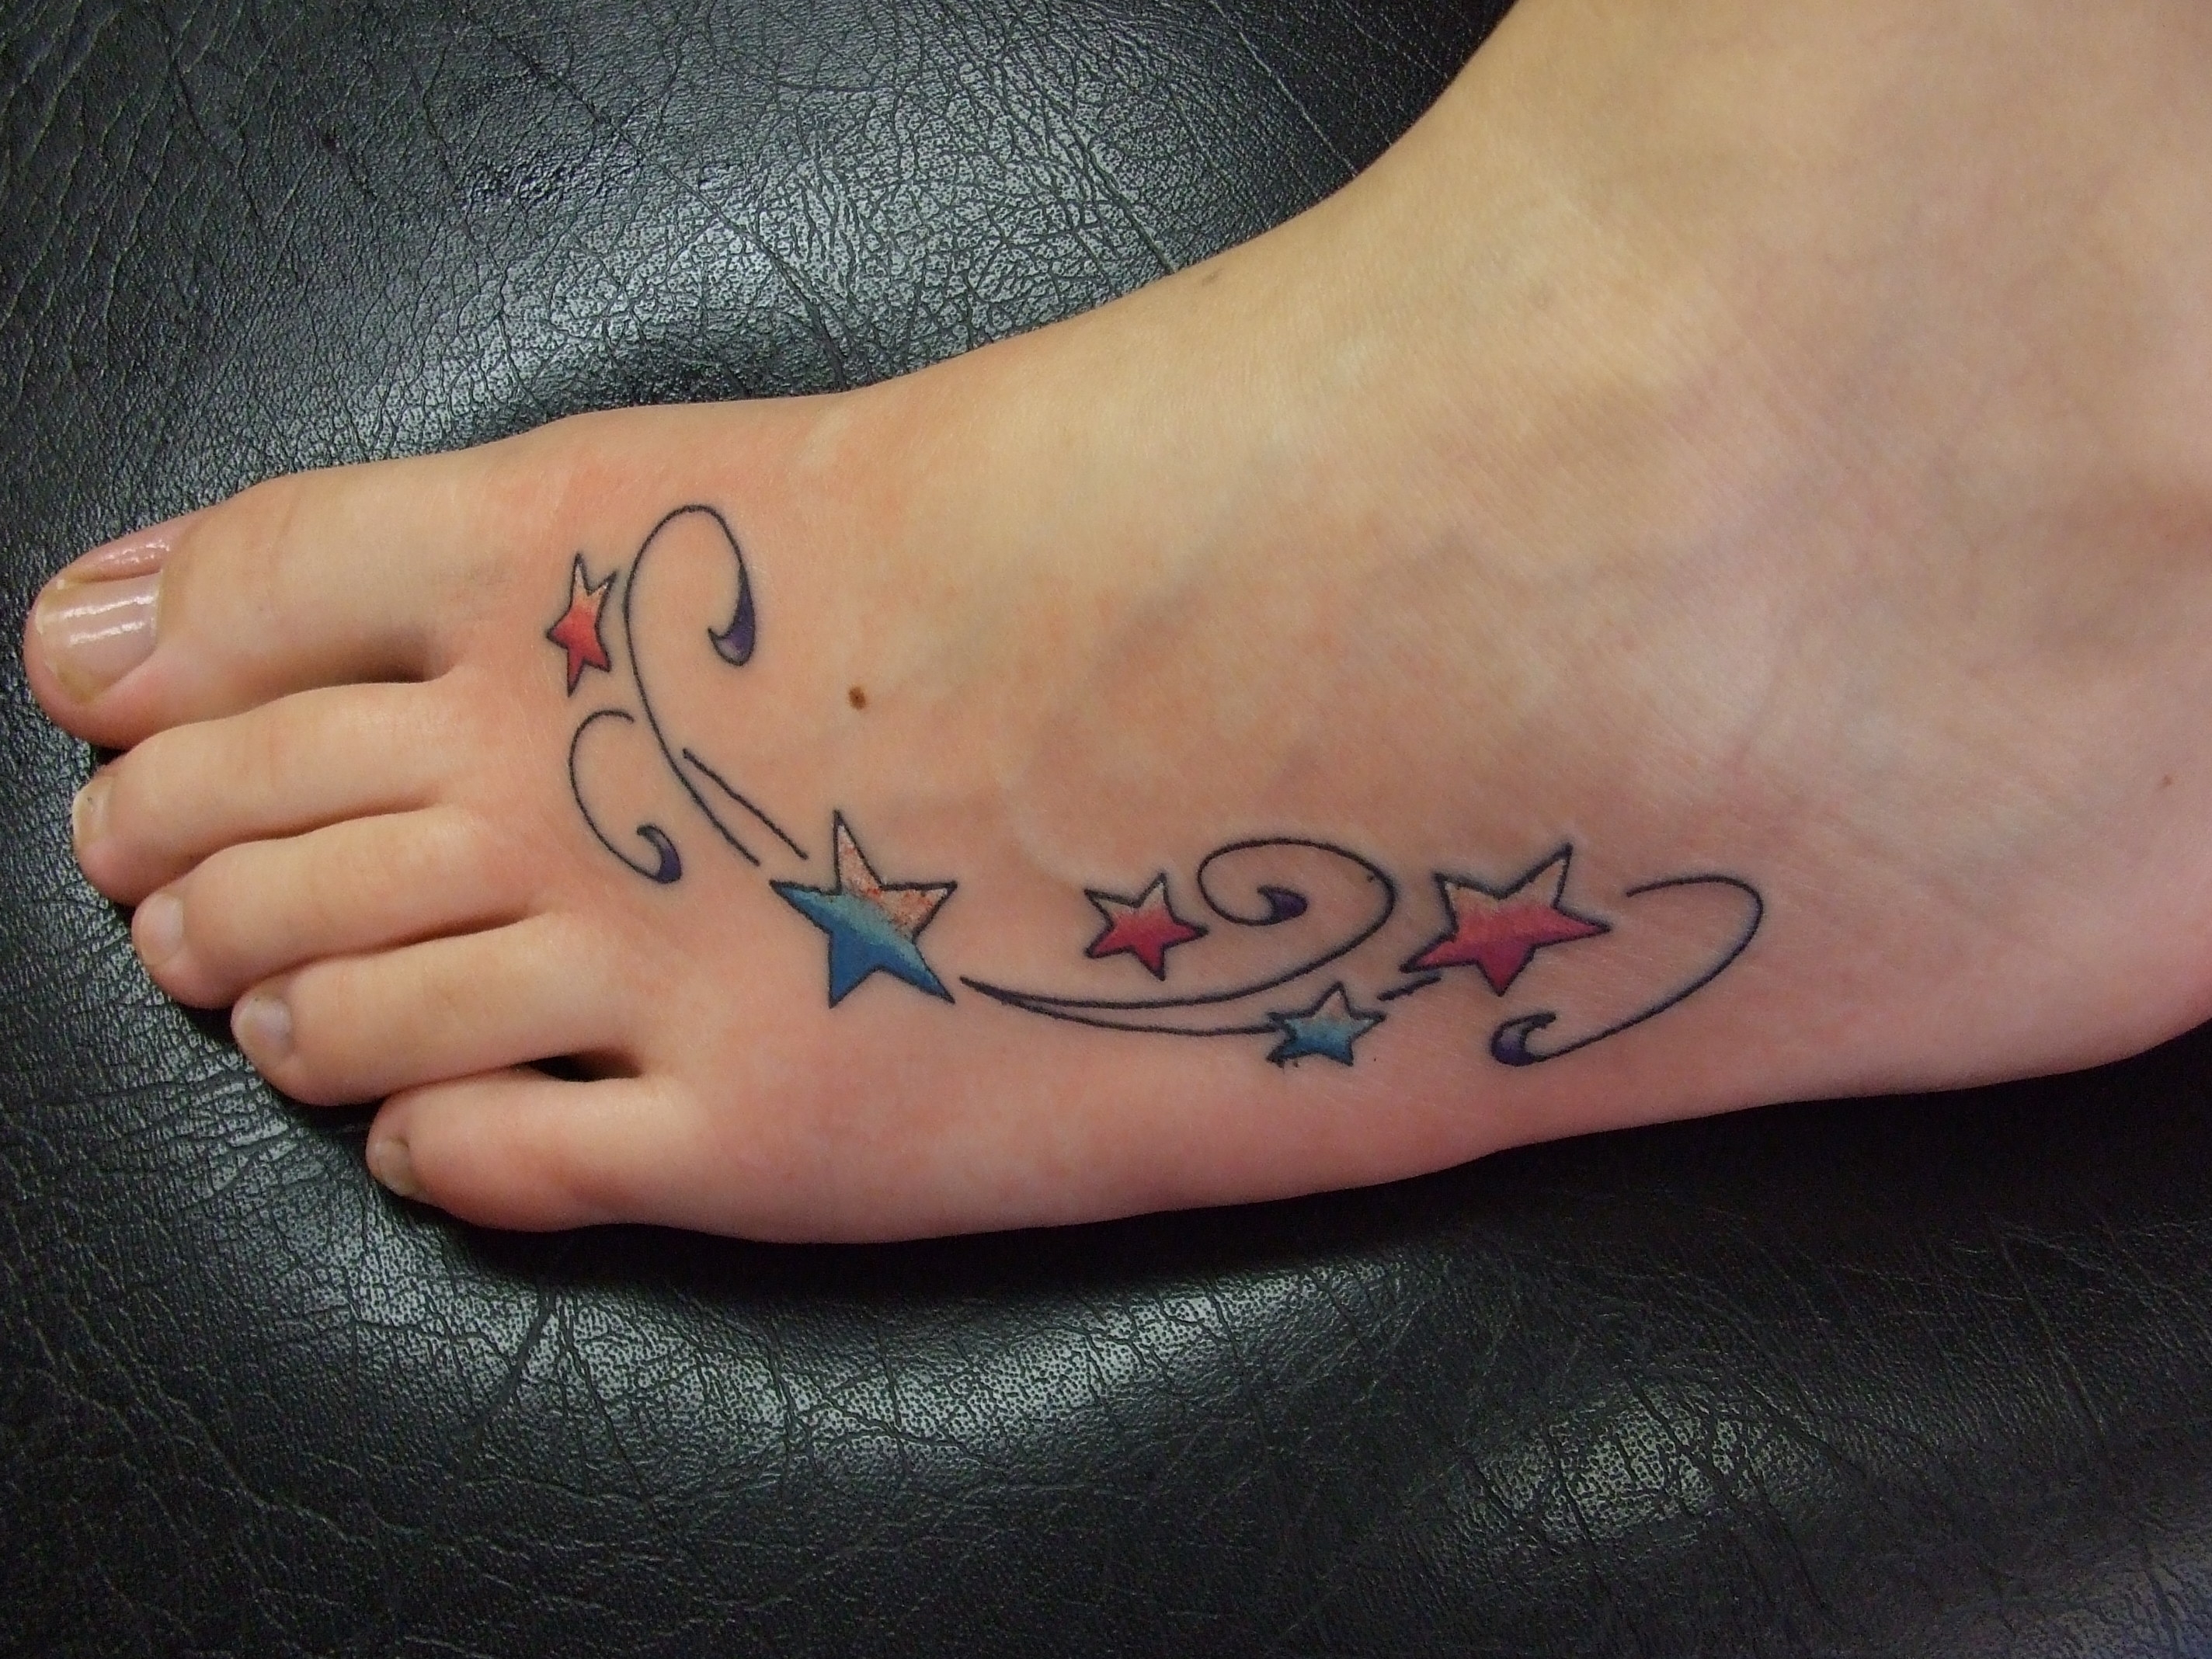 Tattoos of Stars on Foot